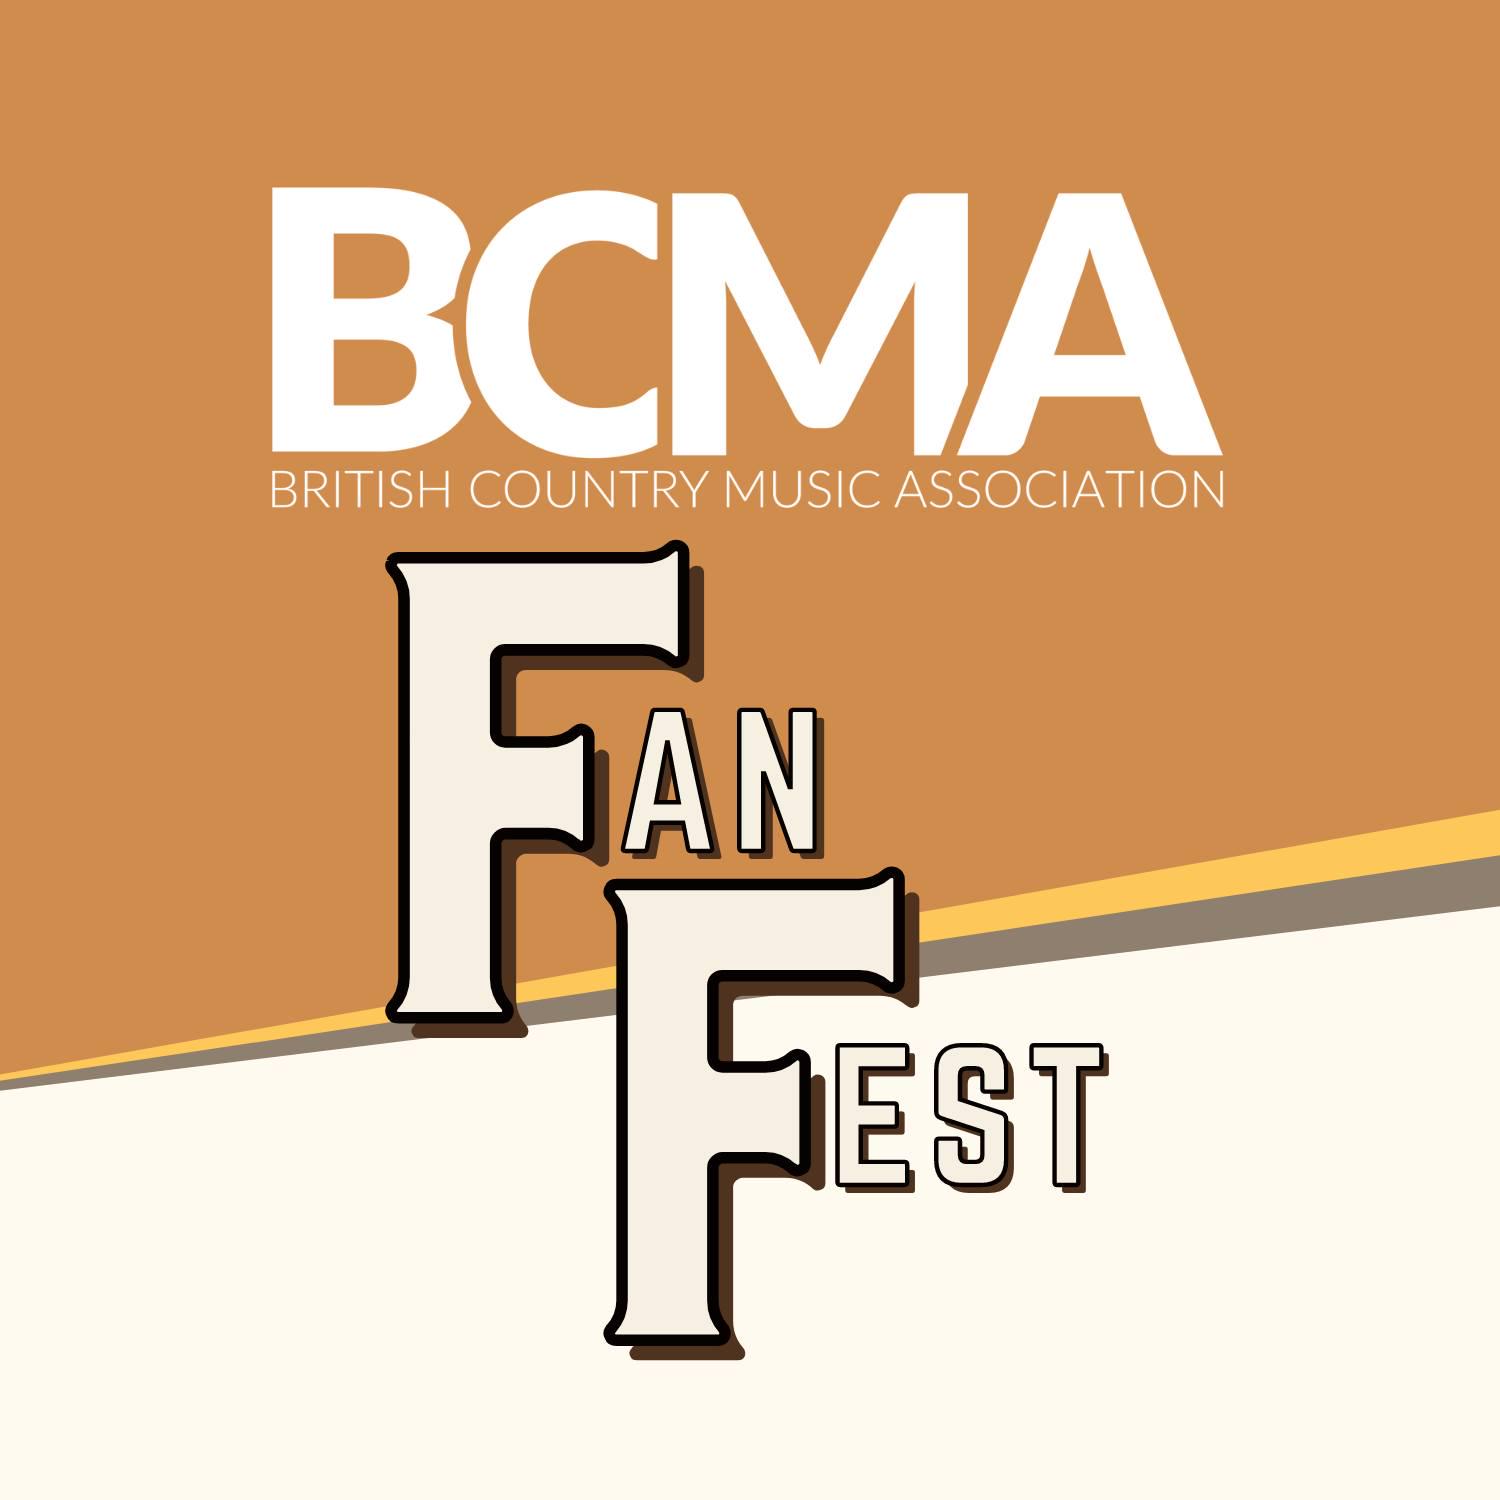 BCMA Fan Fest